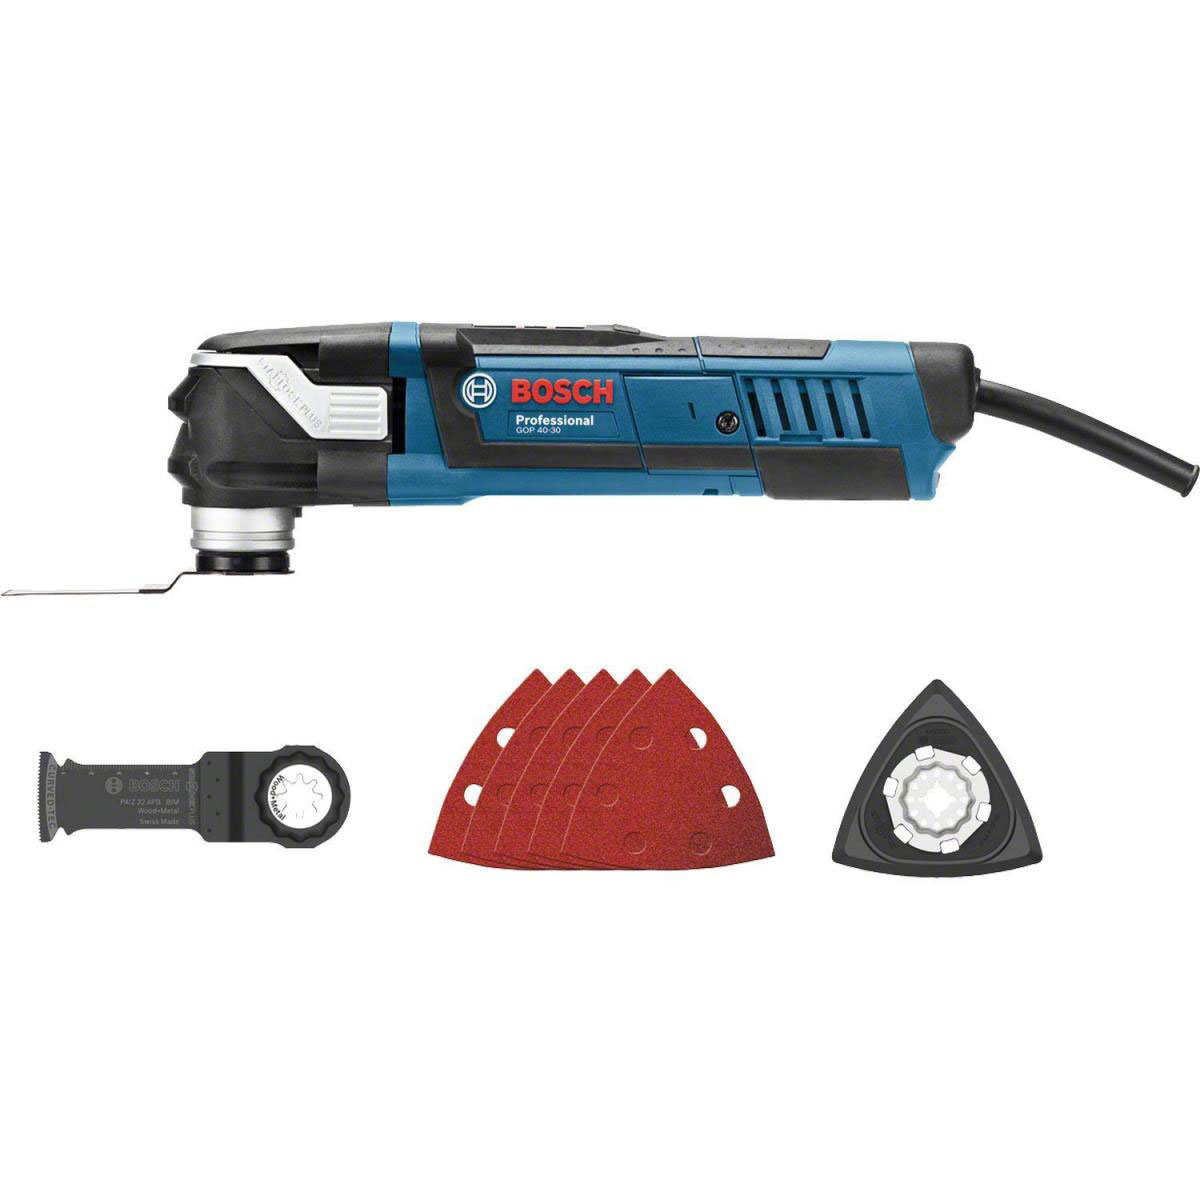 | Professional Bosch Multi-Cutter GOP 300332 40-30